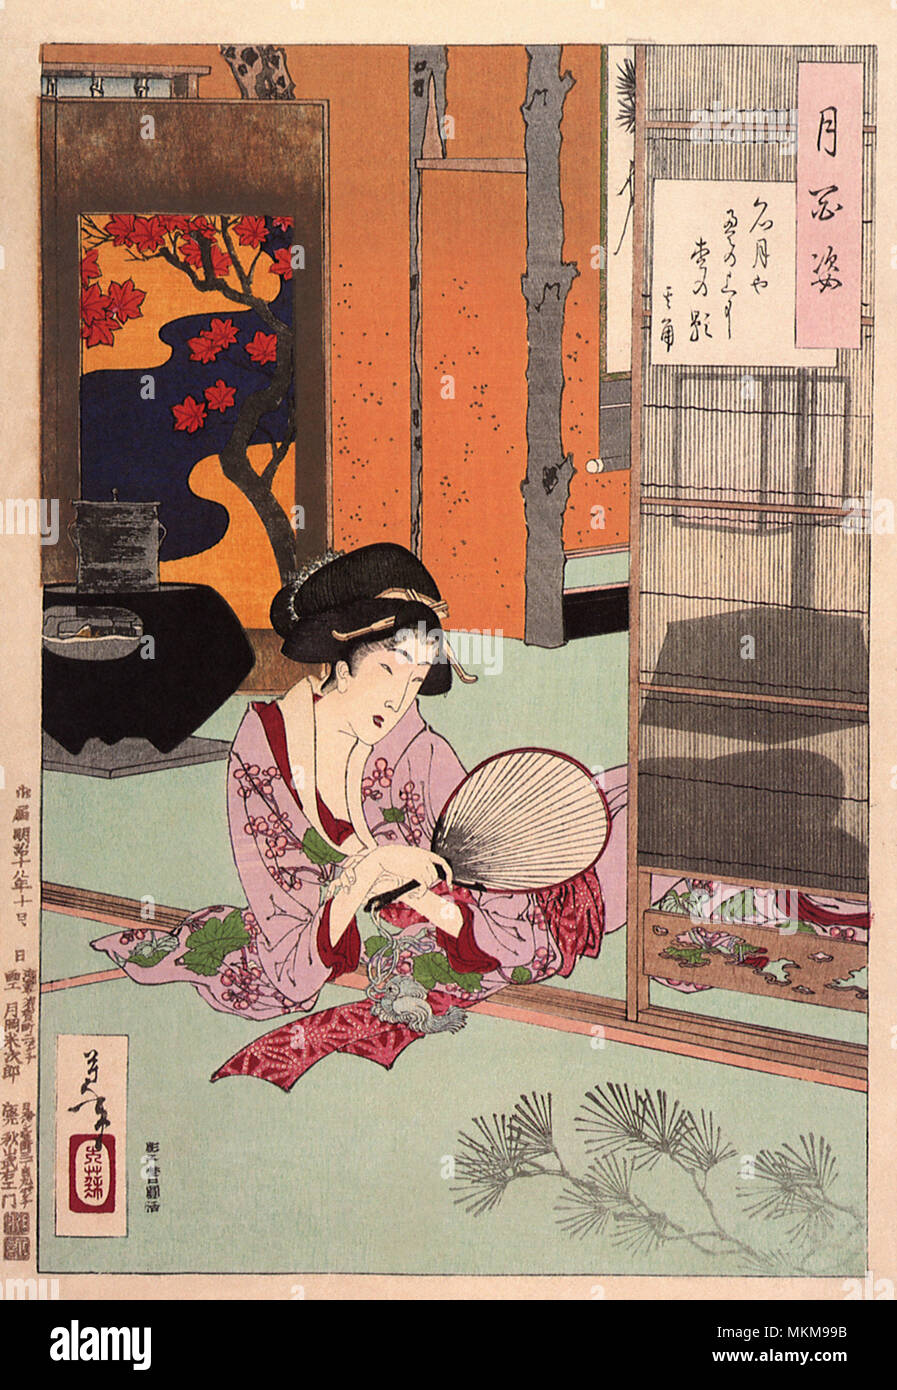 Bebe manchas. Esteras sucias de tatami. Foto de stock 1826180060